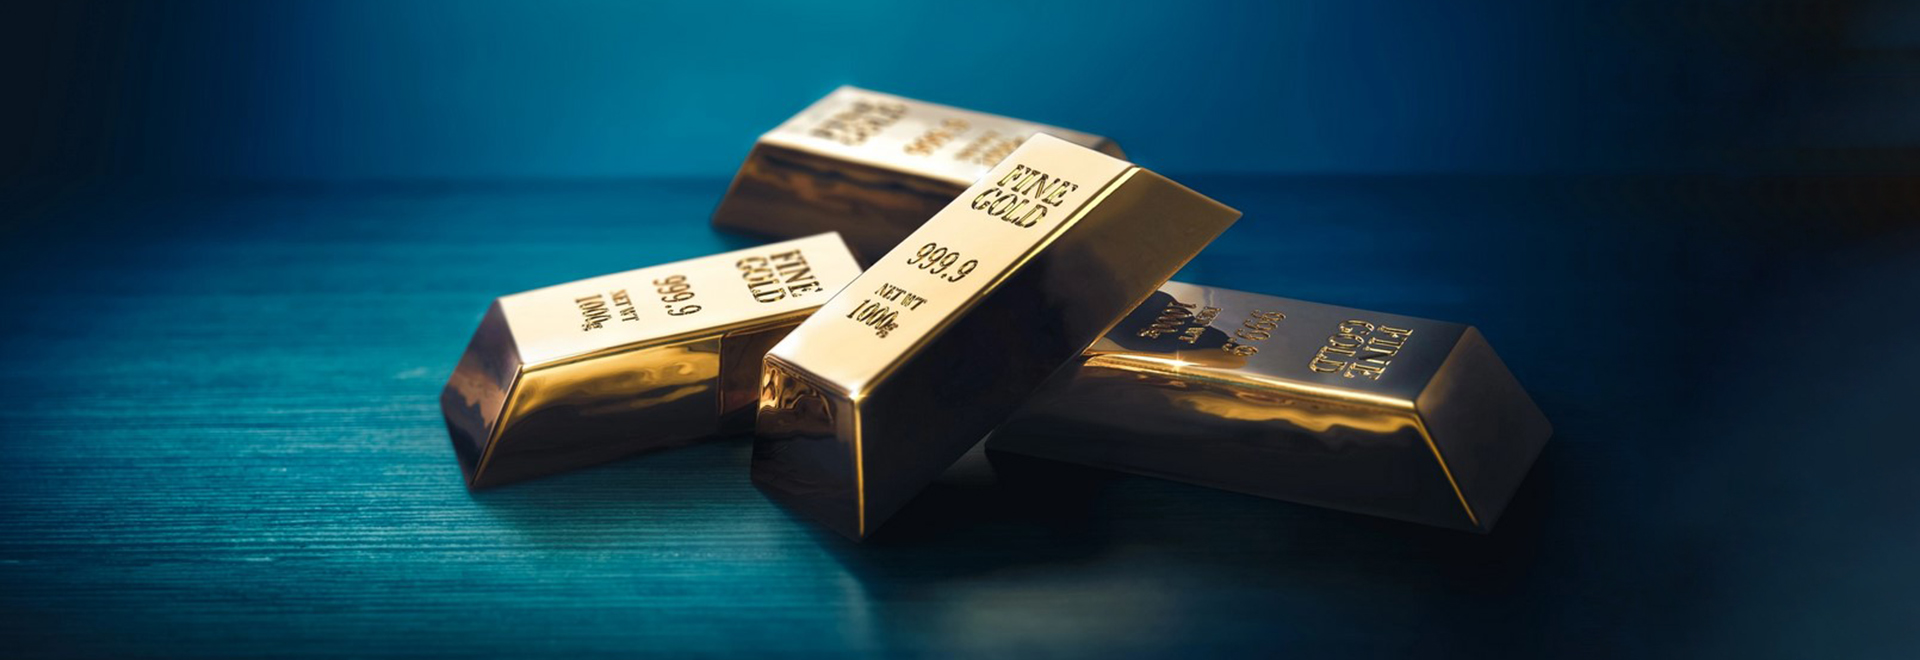 طلا، معامله با سود محدود